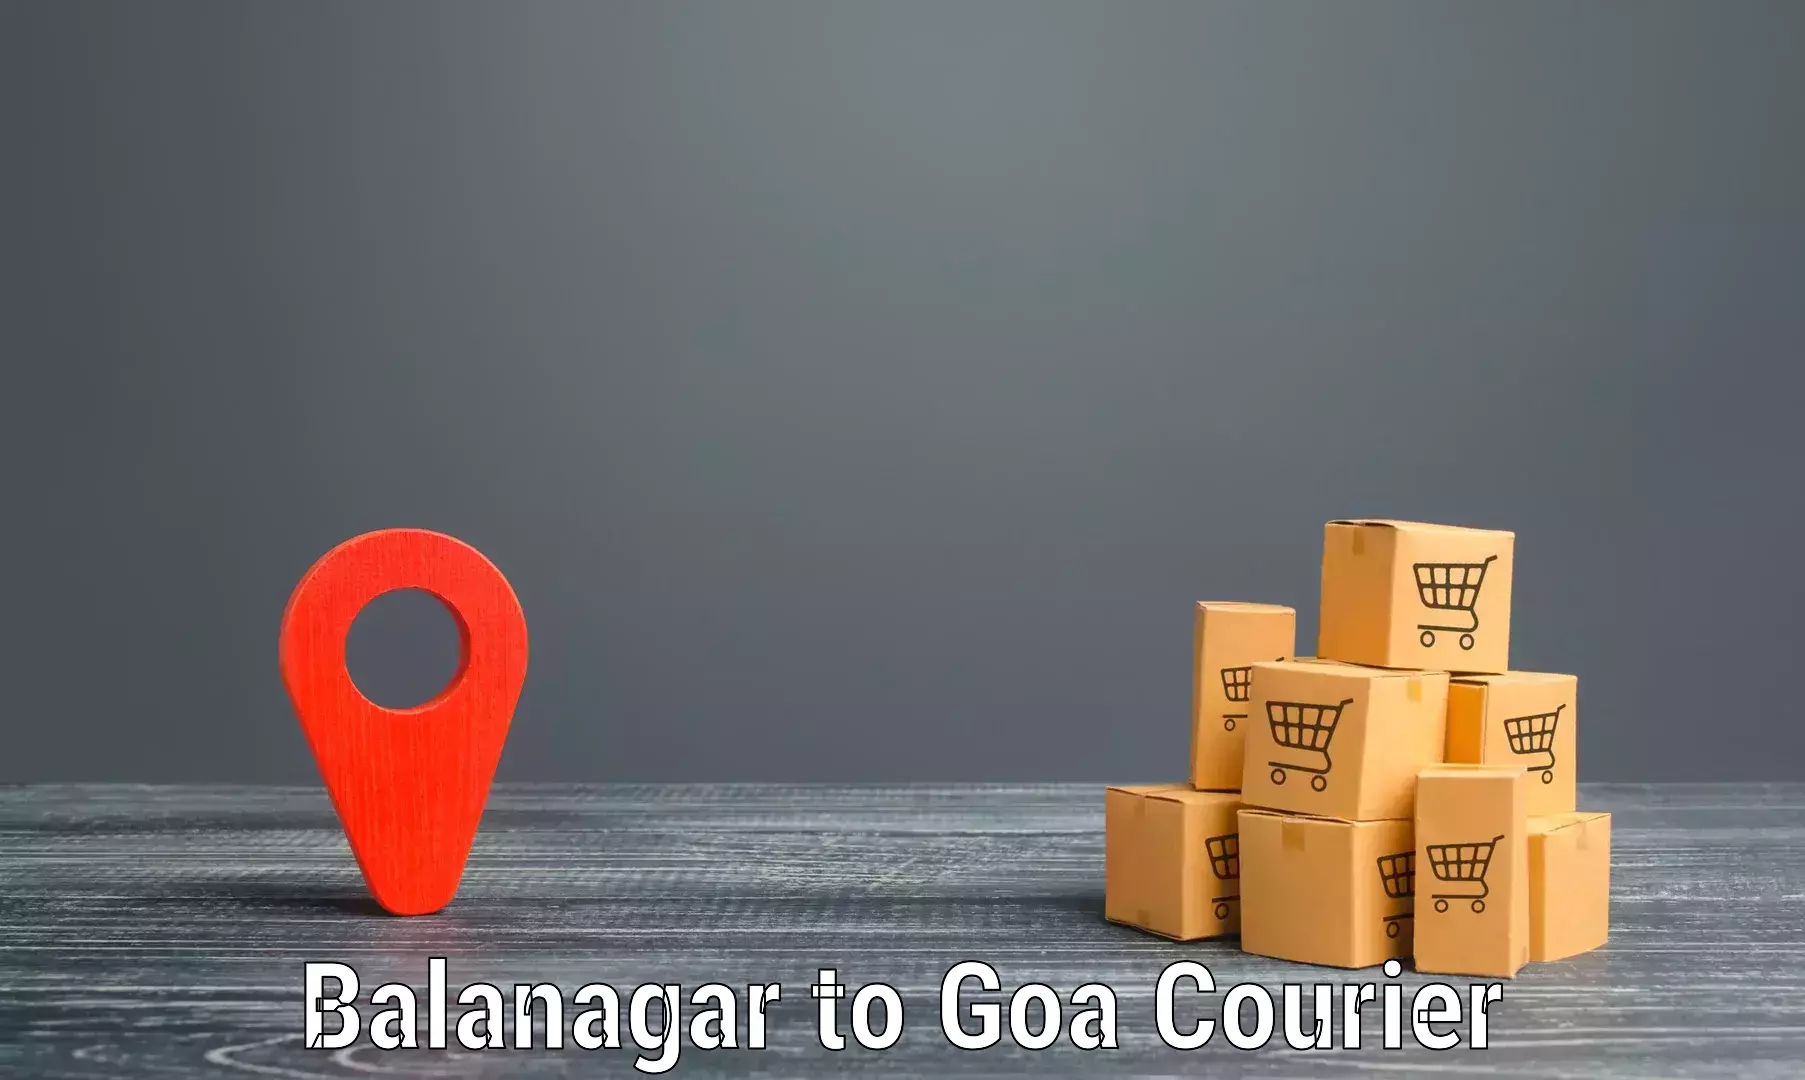 Air courier services Balanagar to NIT Goa